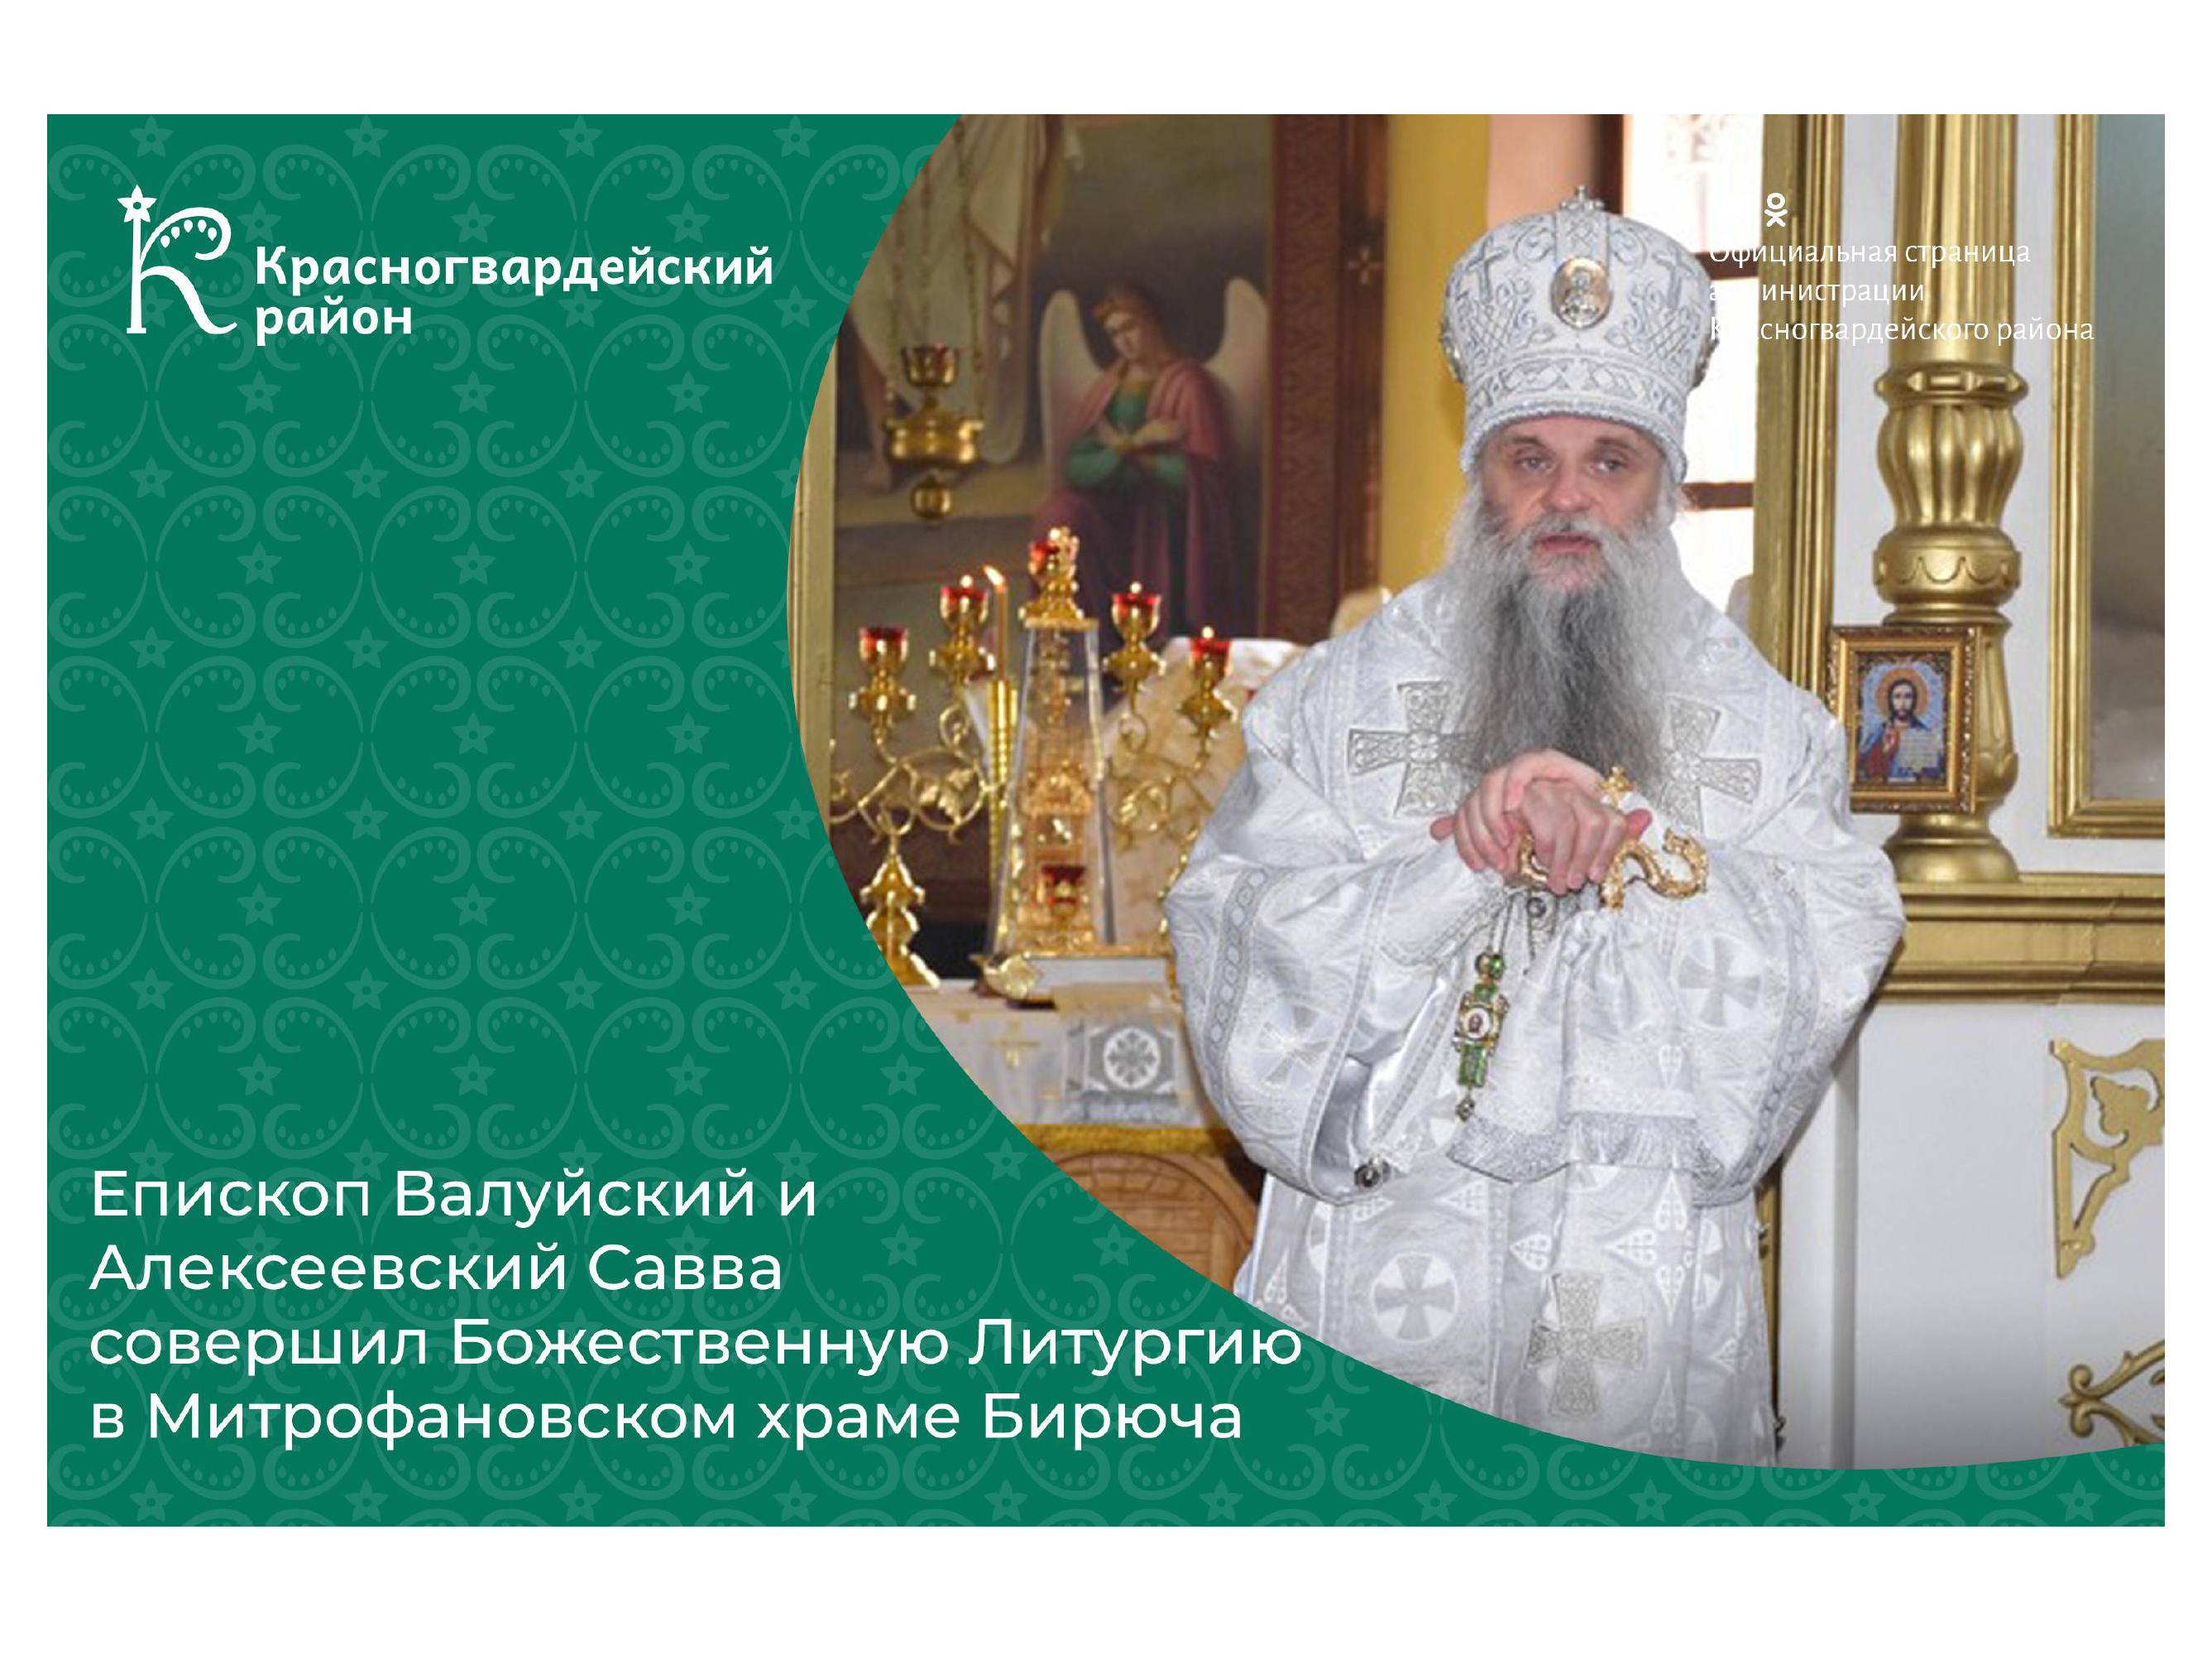 Епископ Валуйский и Алексеевский Савва совершил Божественную Литургию в Митрофановском храме Бирюча.